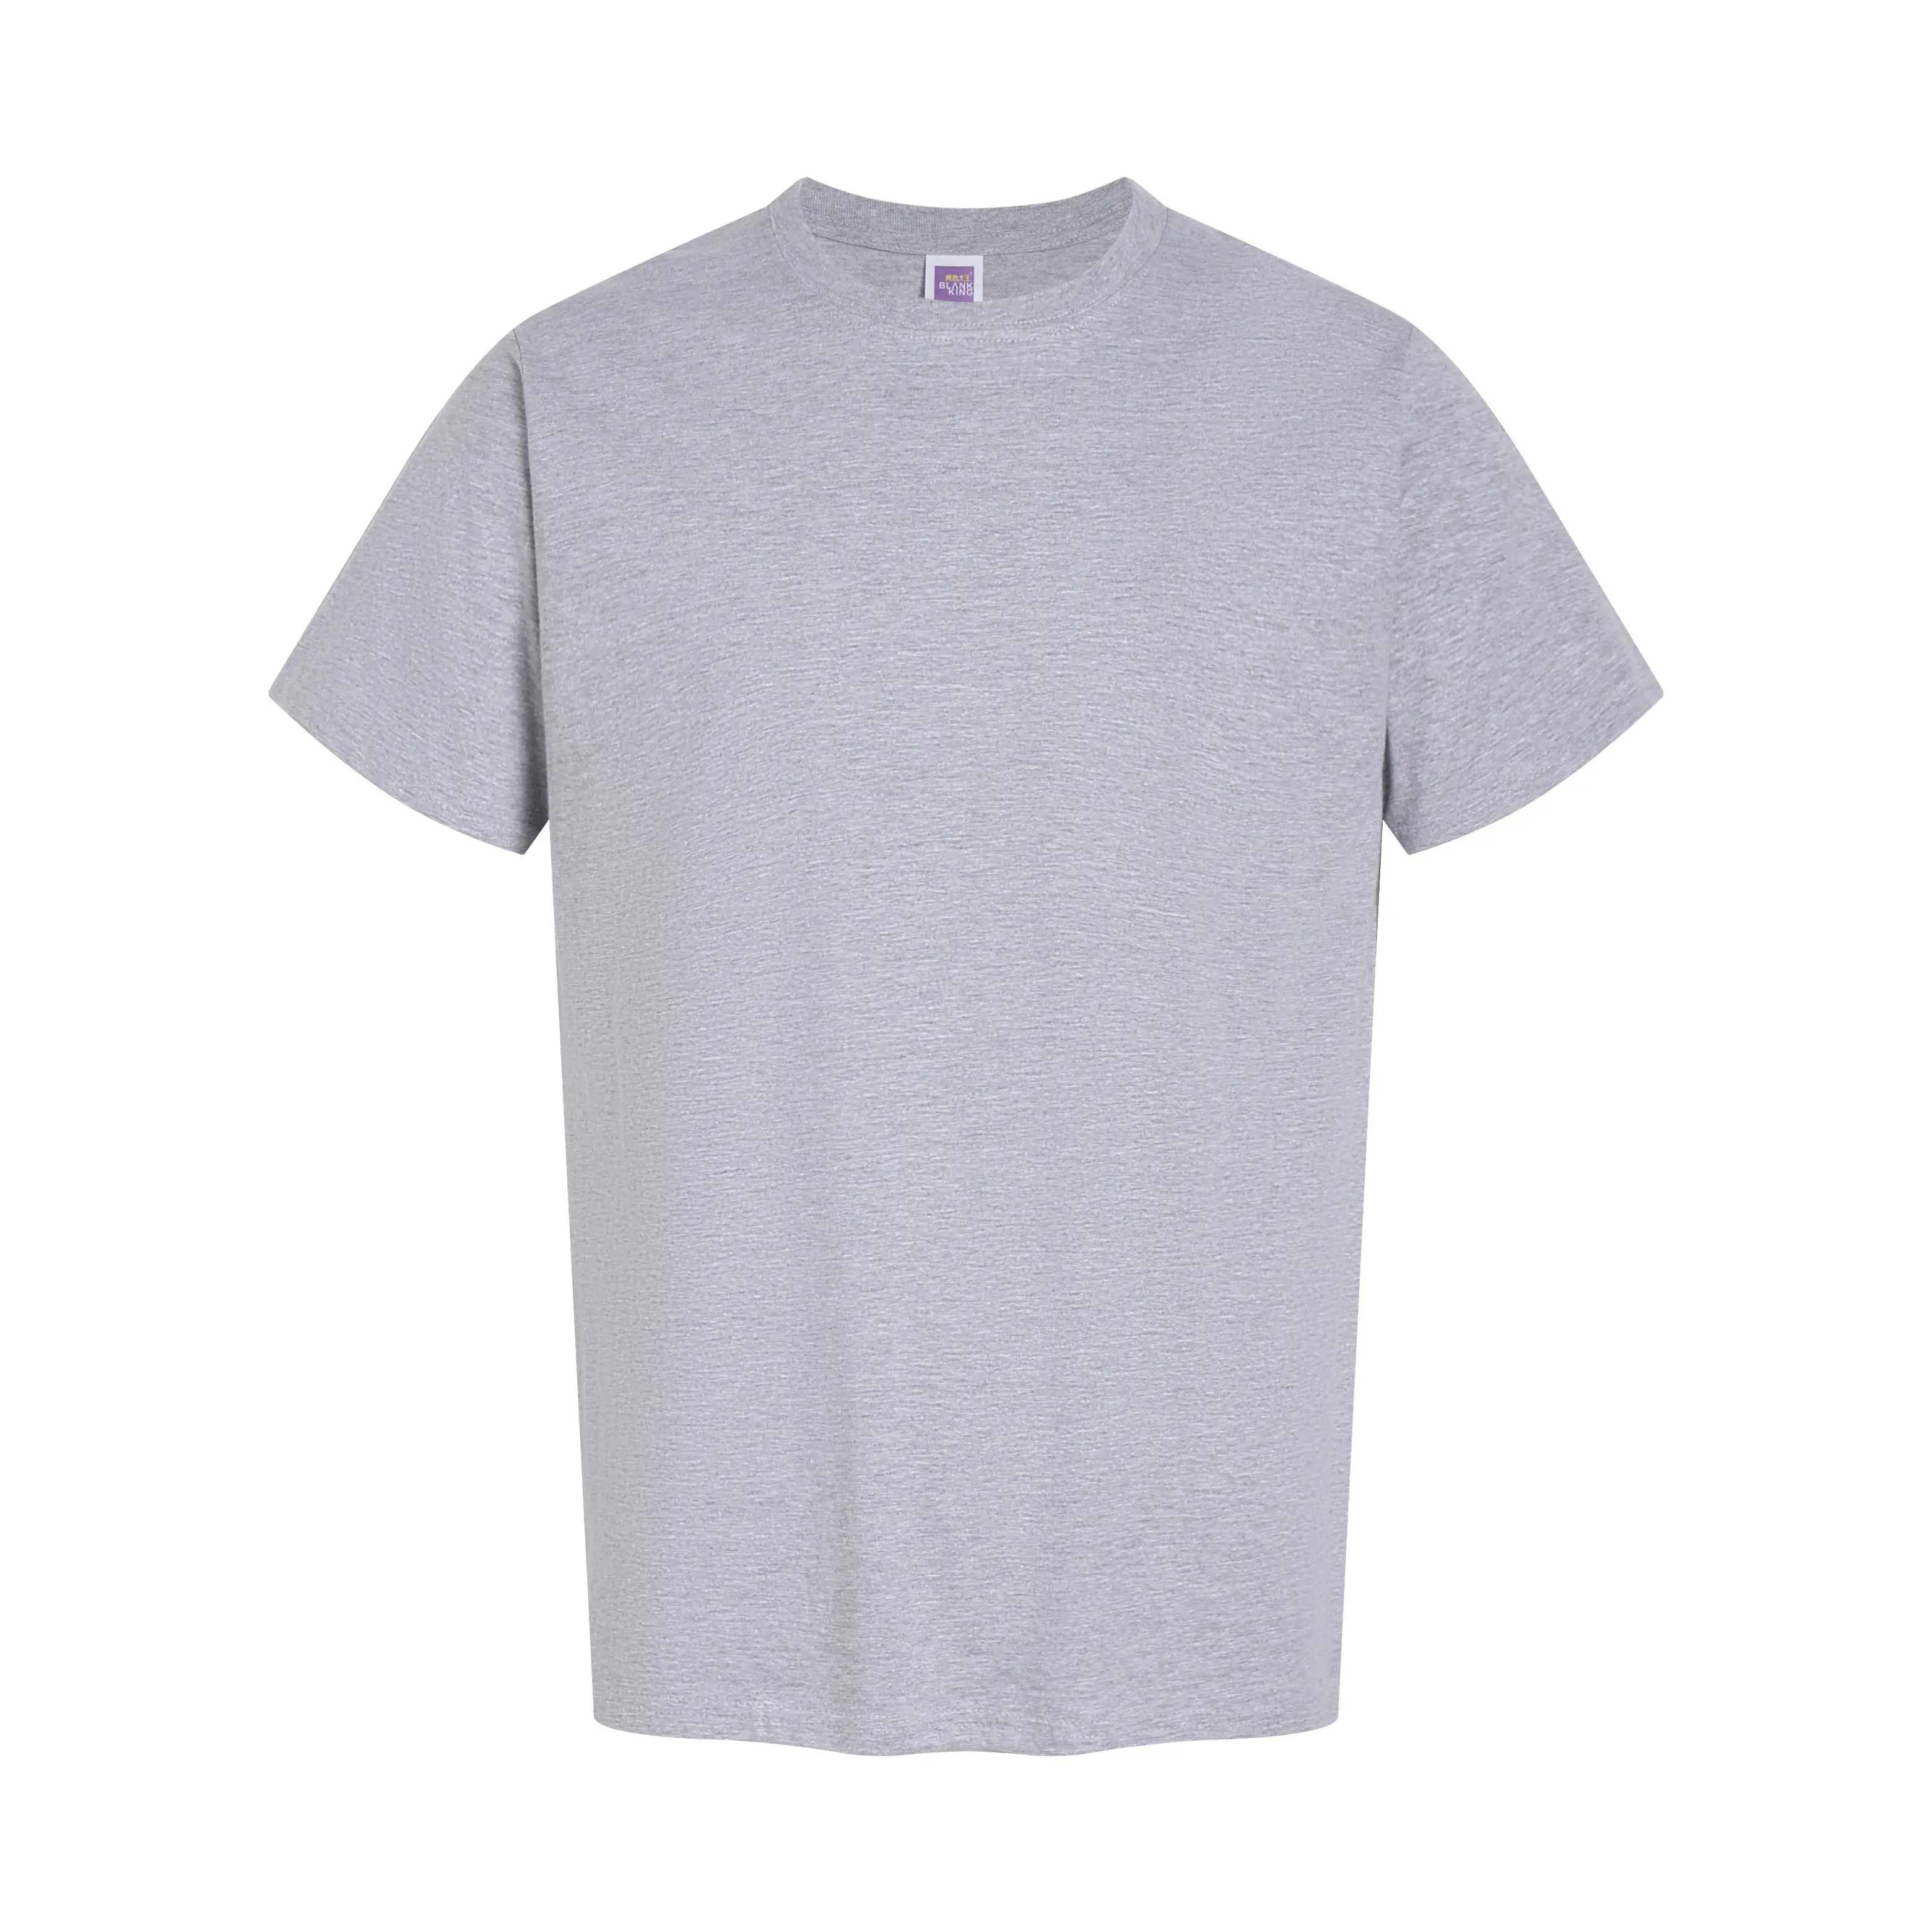 कस्टम लोगो टी शर्ट 100% कॉटन ओवरसाइज़्ड टी-शर्ट पुरुषों के लिए गोल गर्दन वाली छोटी आस्तीन वाली टी-शर्ट